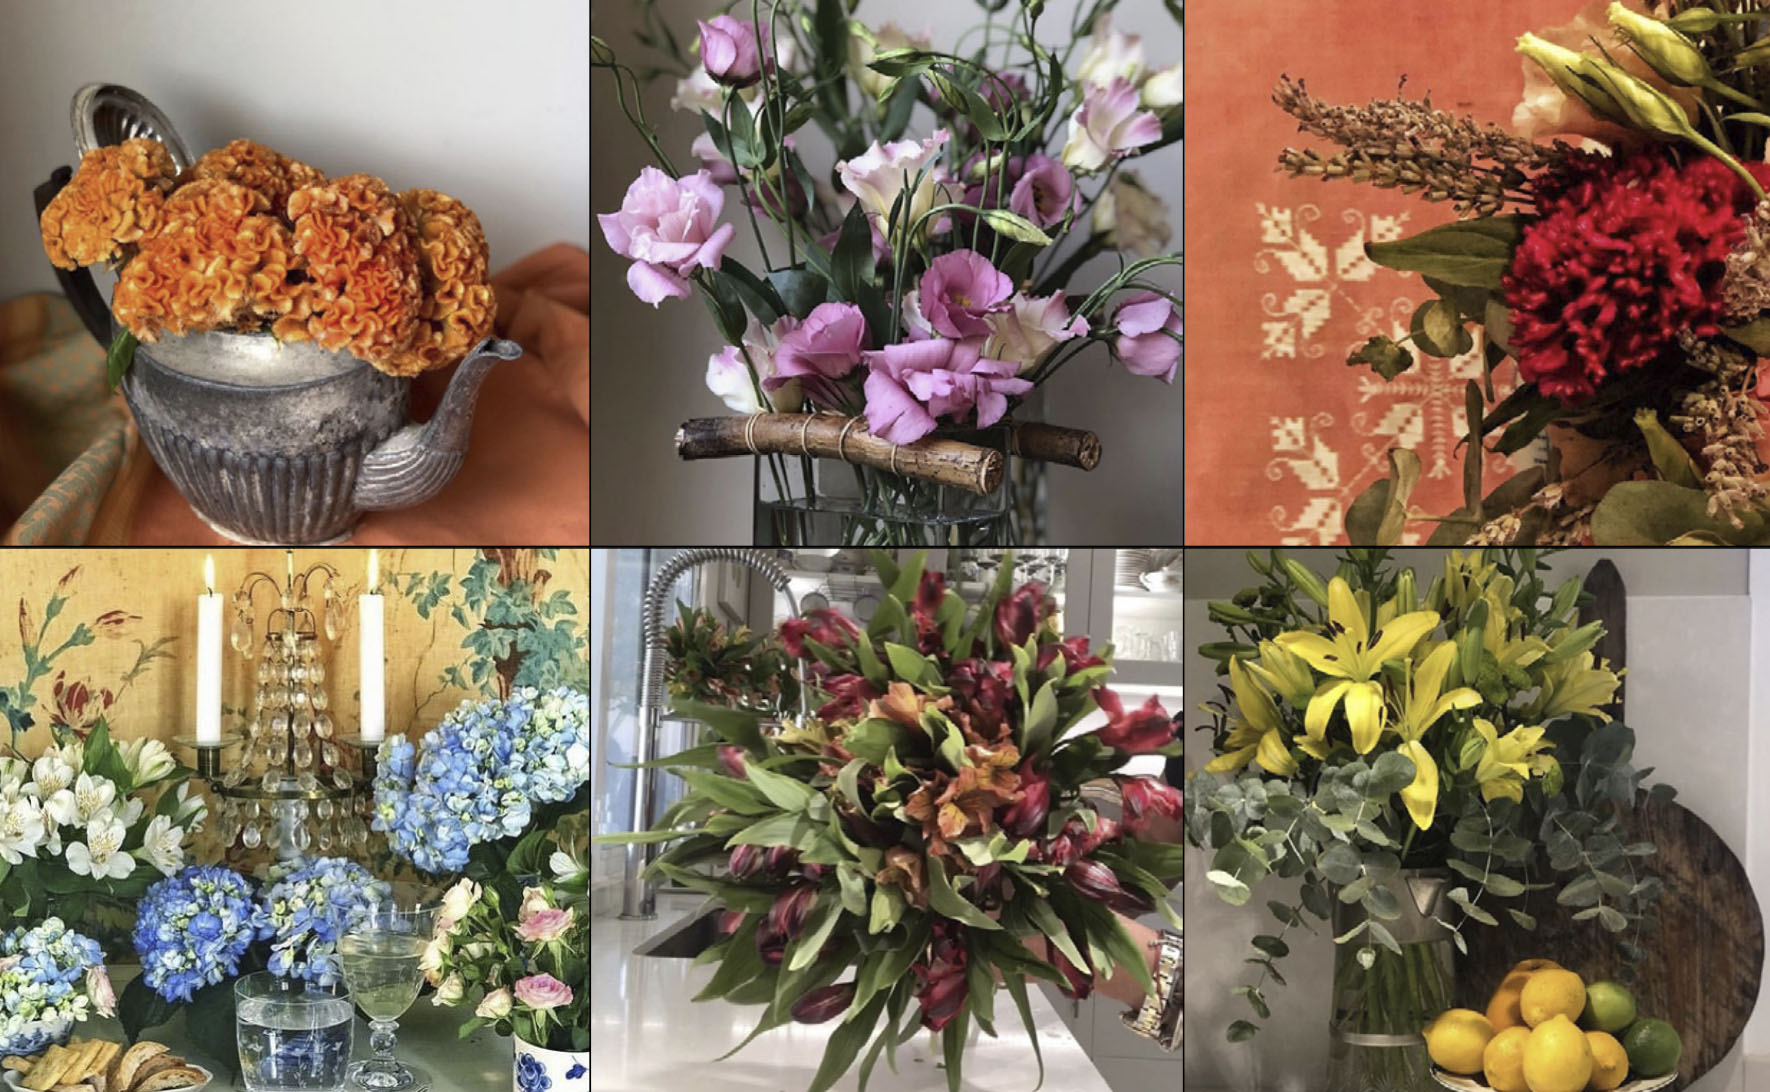 FLOREANDO. Una forma original de vender flores directamente del campo nacida de la necesidad (do it yourself)